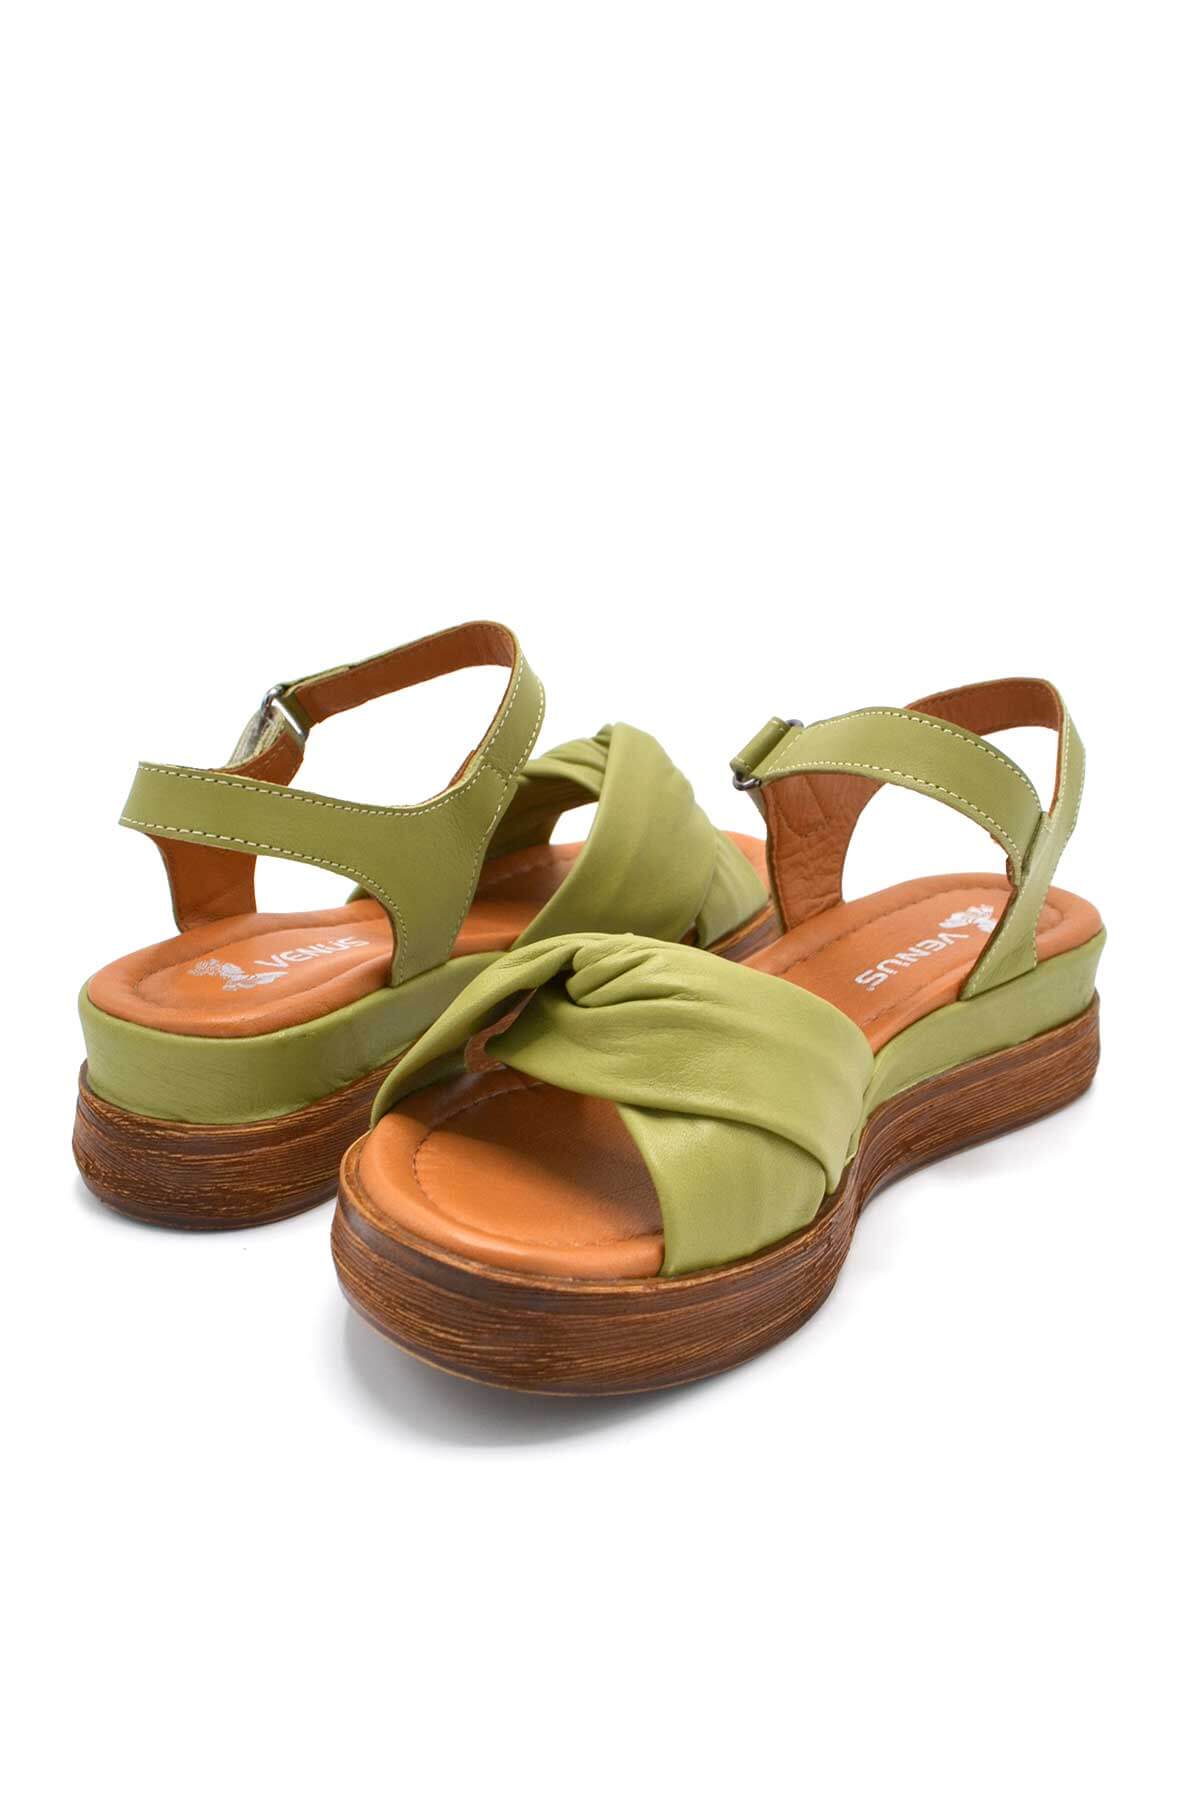 Kadın Comfort Deri Sandalet Yeşil 2216403Y